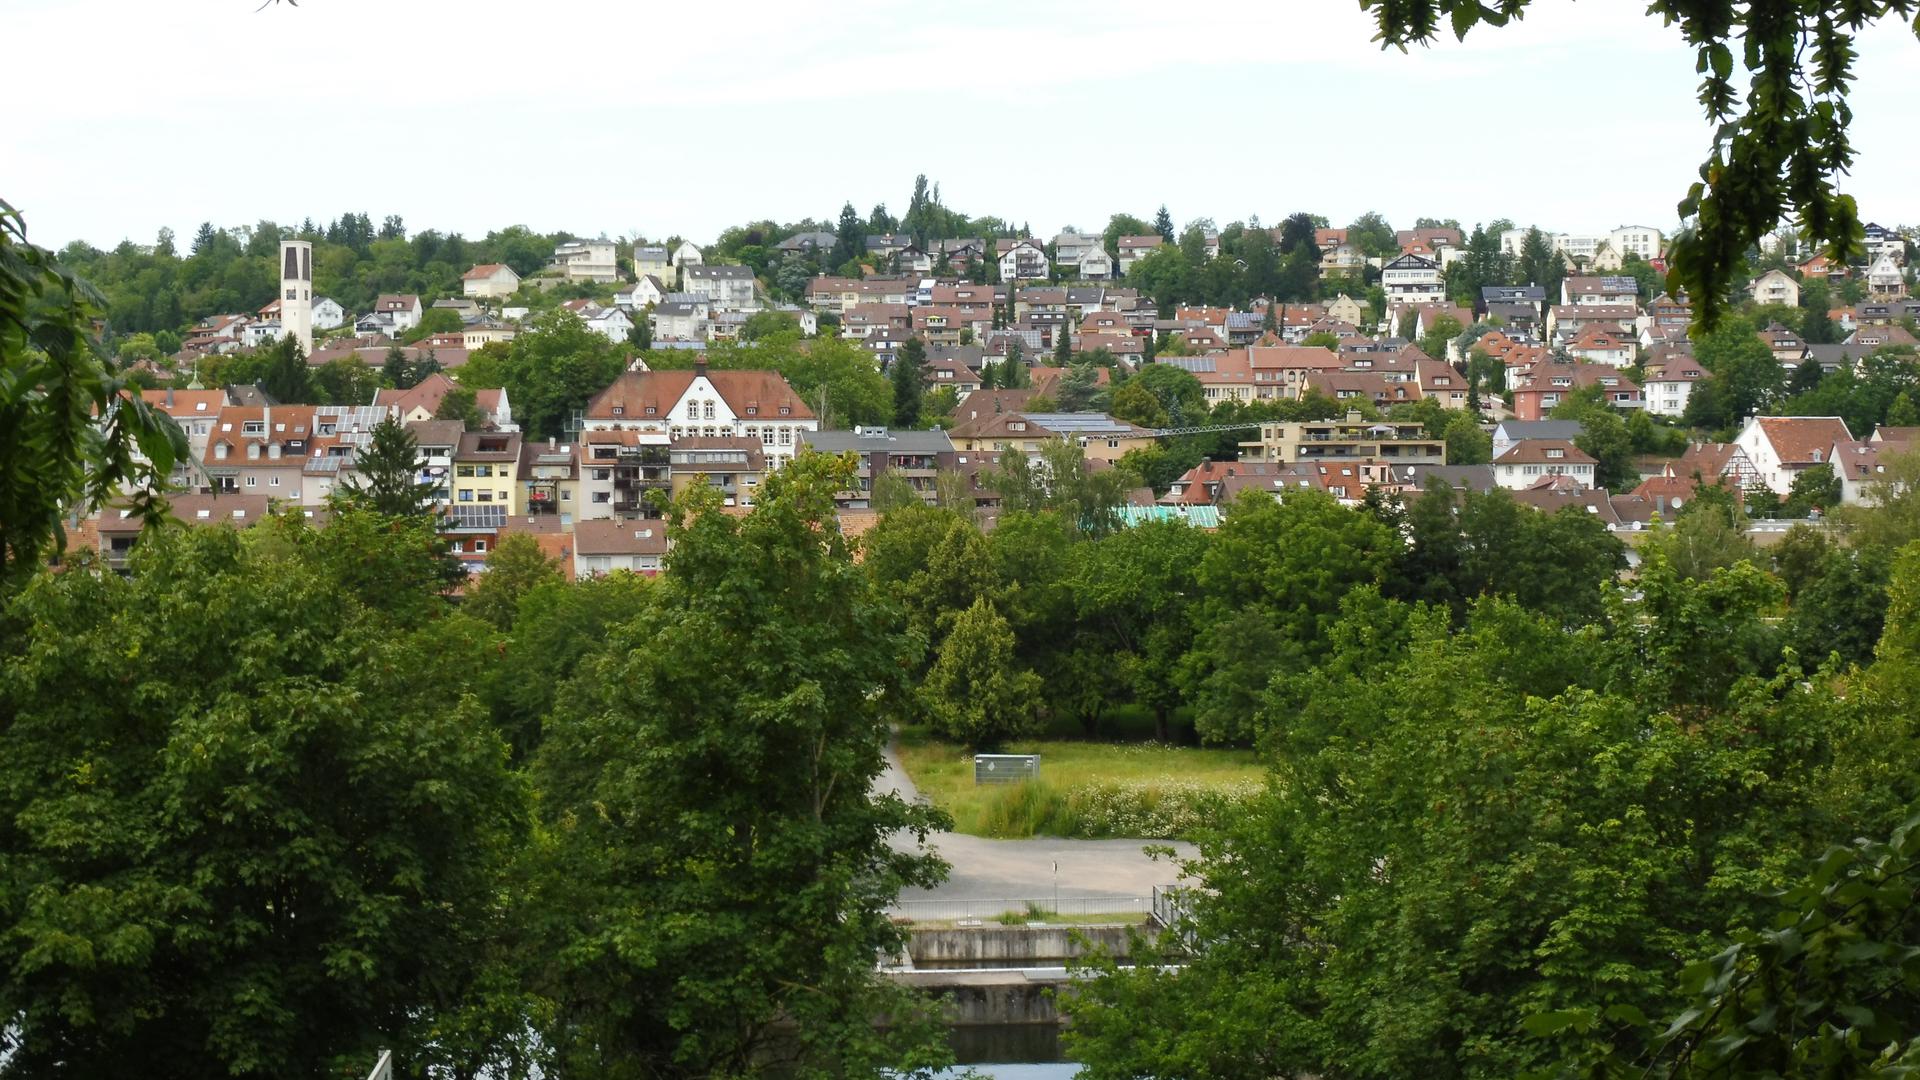 Blick aufs „Wittum“, das heute weitgehend bebaut ist, aber immer  noch ein beliebtes, ruhiges Wohngebiet ist.